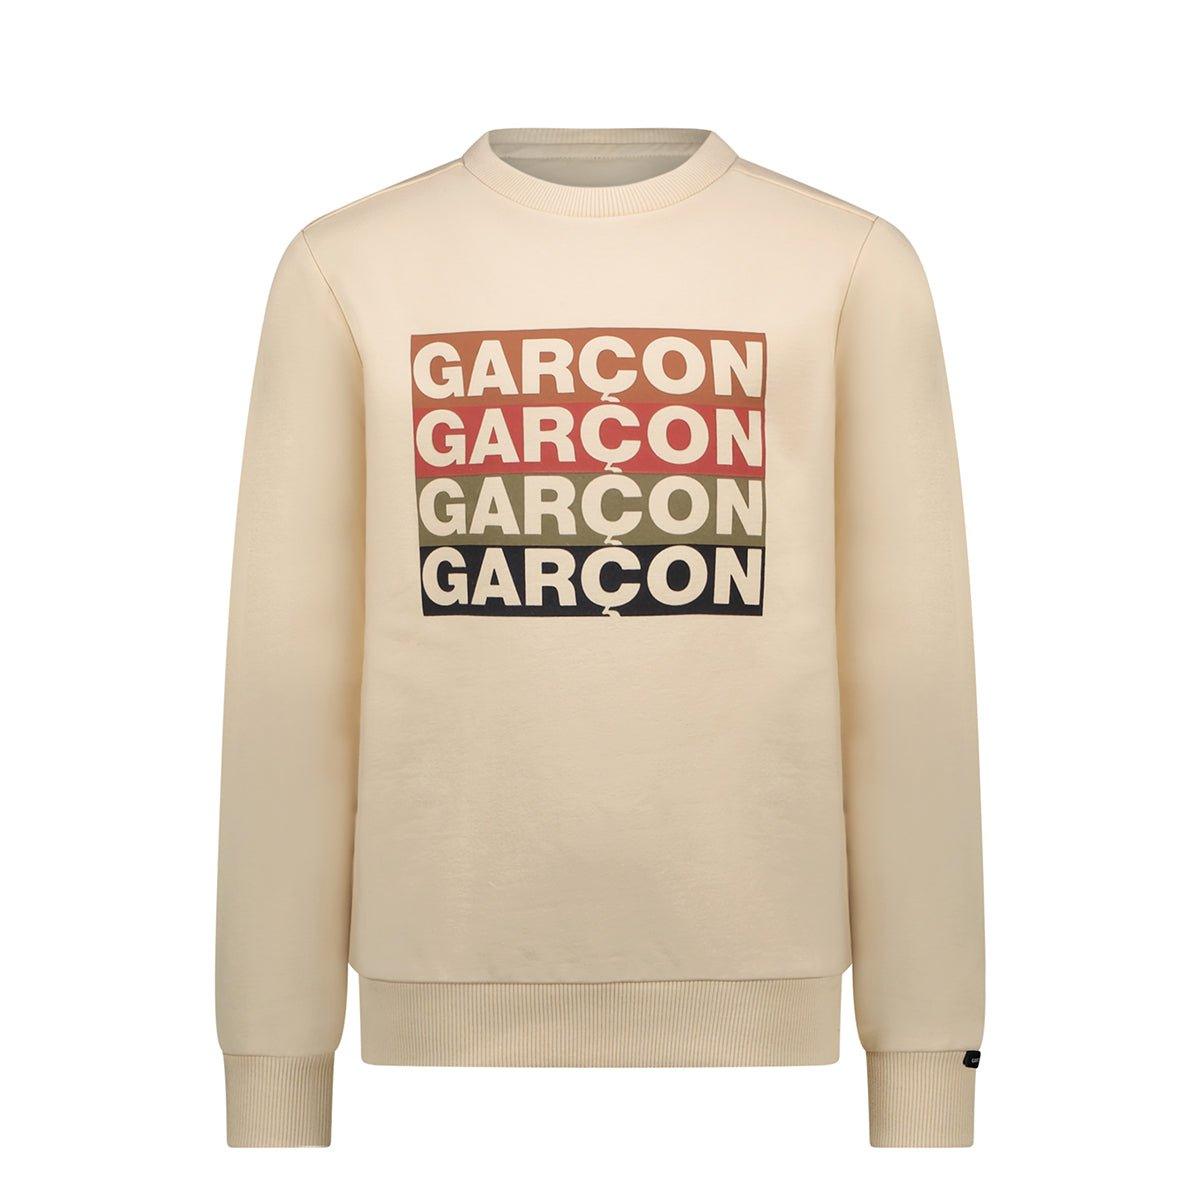 OLIVER GARÇON logo sweater - mooiemerken.nl